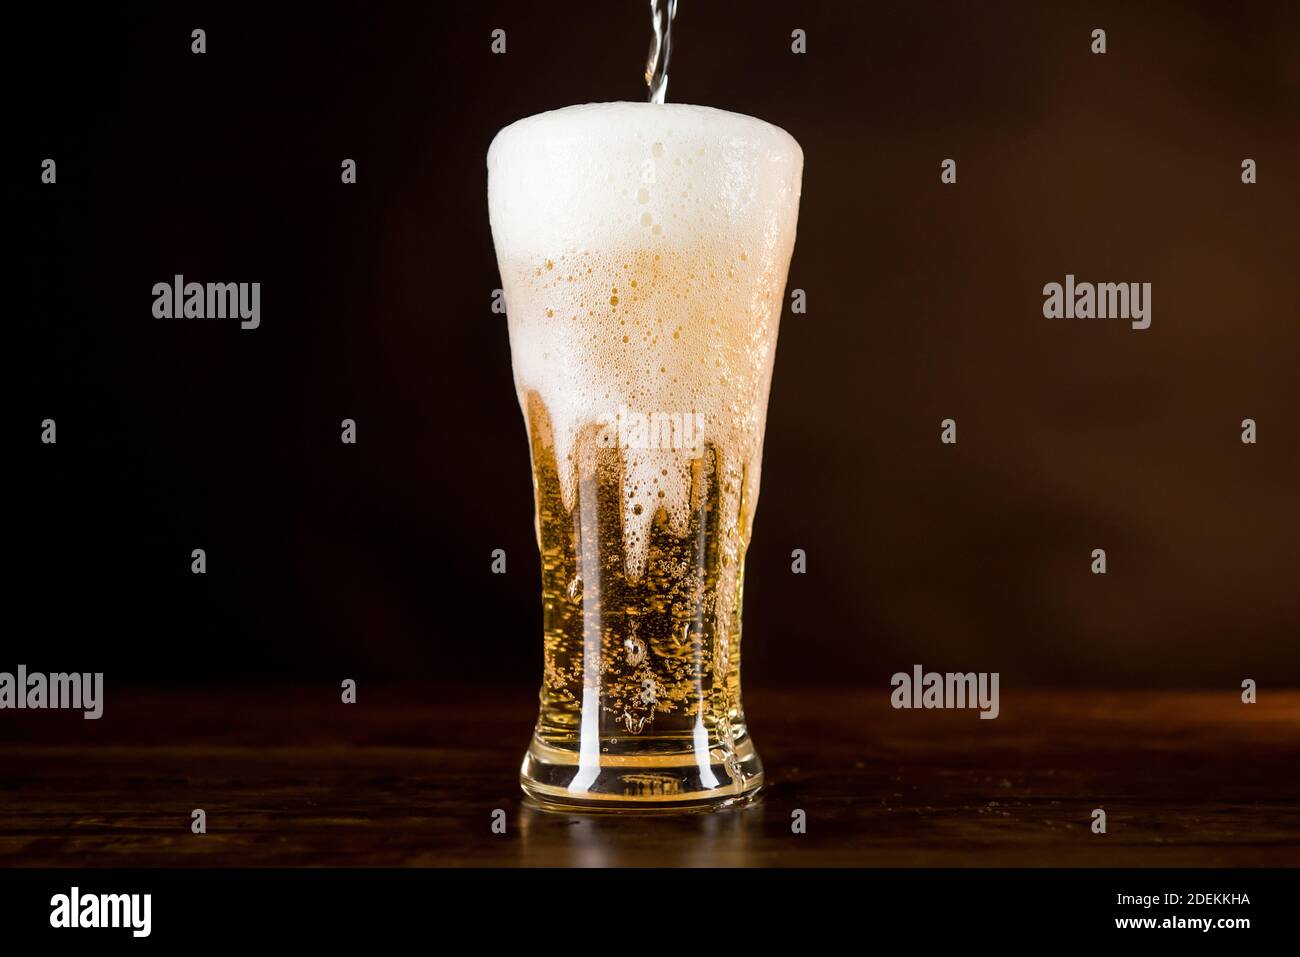 Birra fredda dorata versata nel bicchiere sul tavolo con schiuma schiumosa a flusso eccessivo Foto Stock